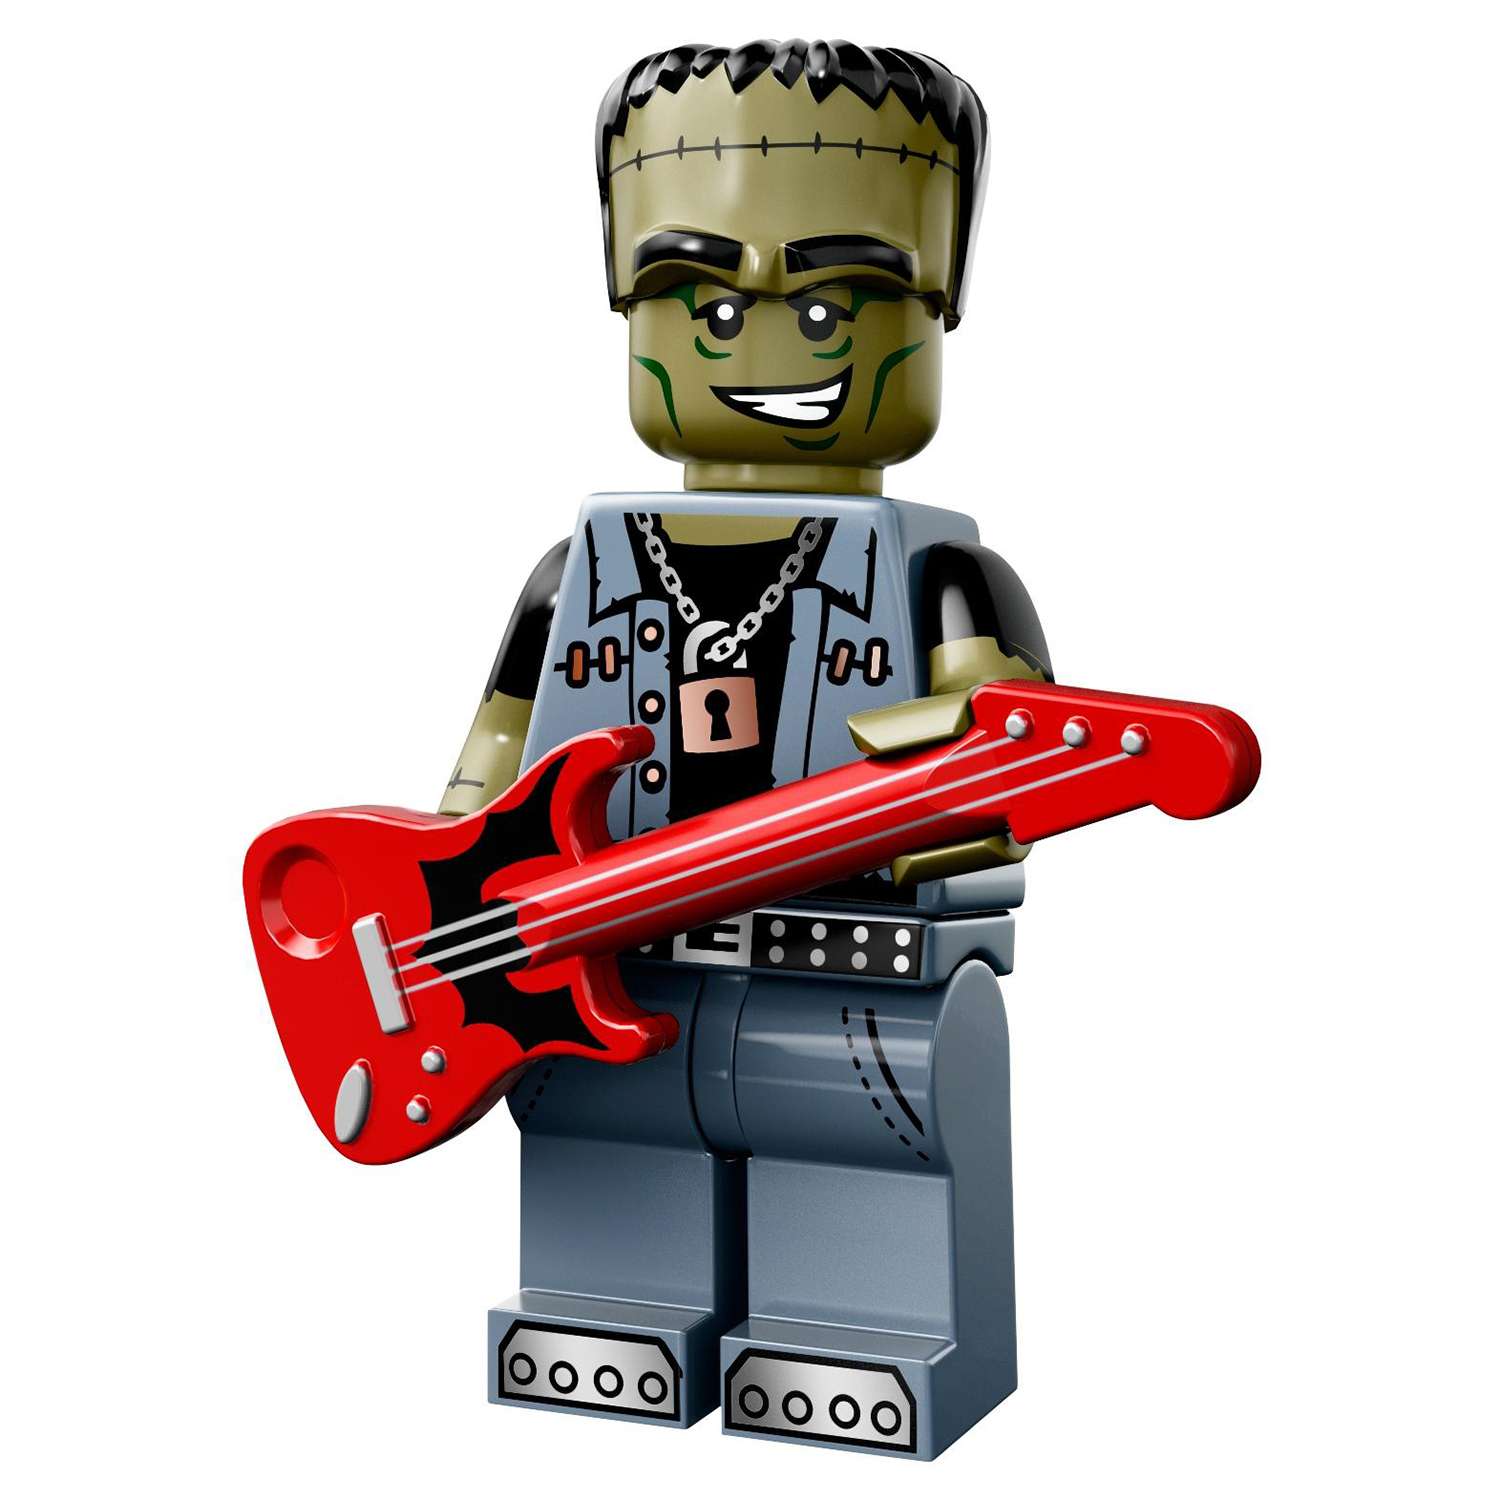 Конструктор LEGO Minifigures серия 14: Монстры (71010) в непрозрачной упаковке (Сюрприз) - фото 12